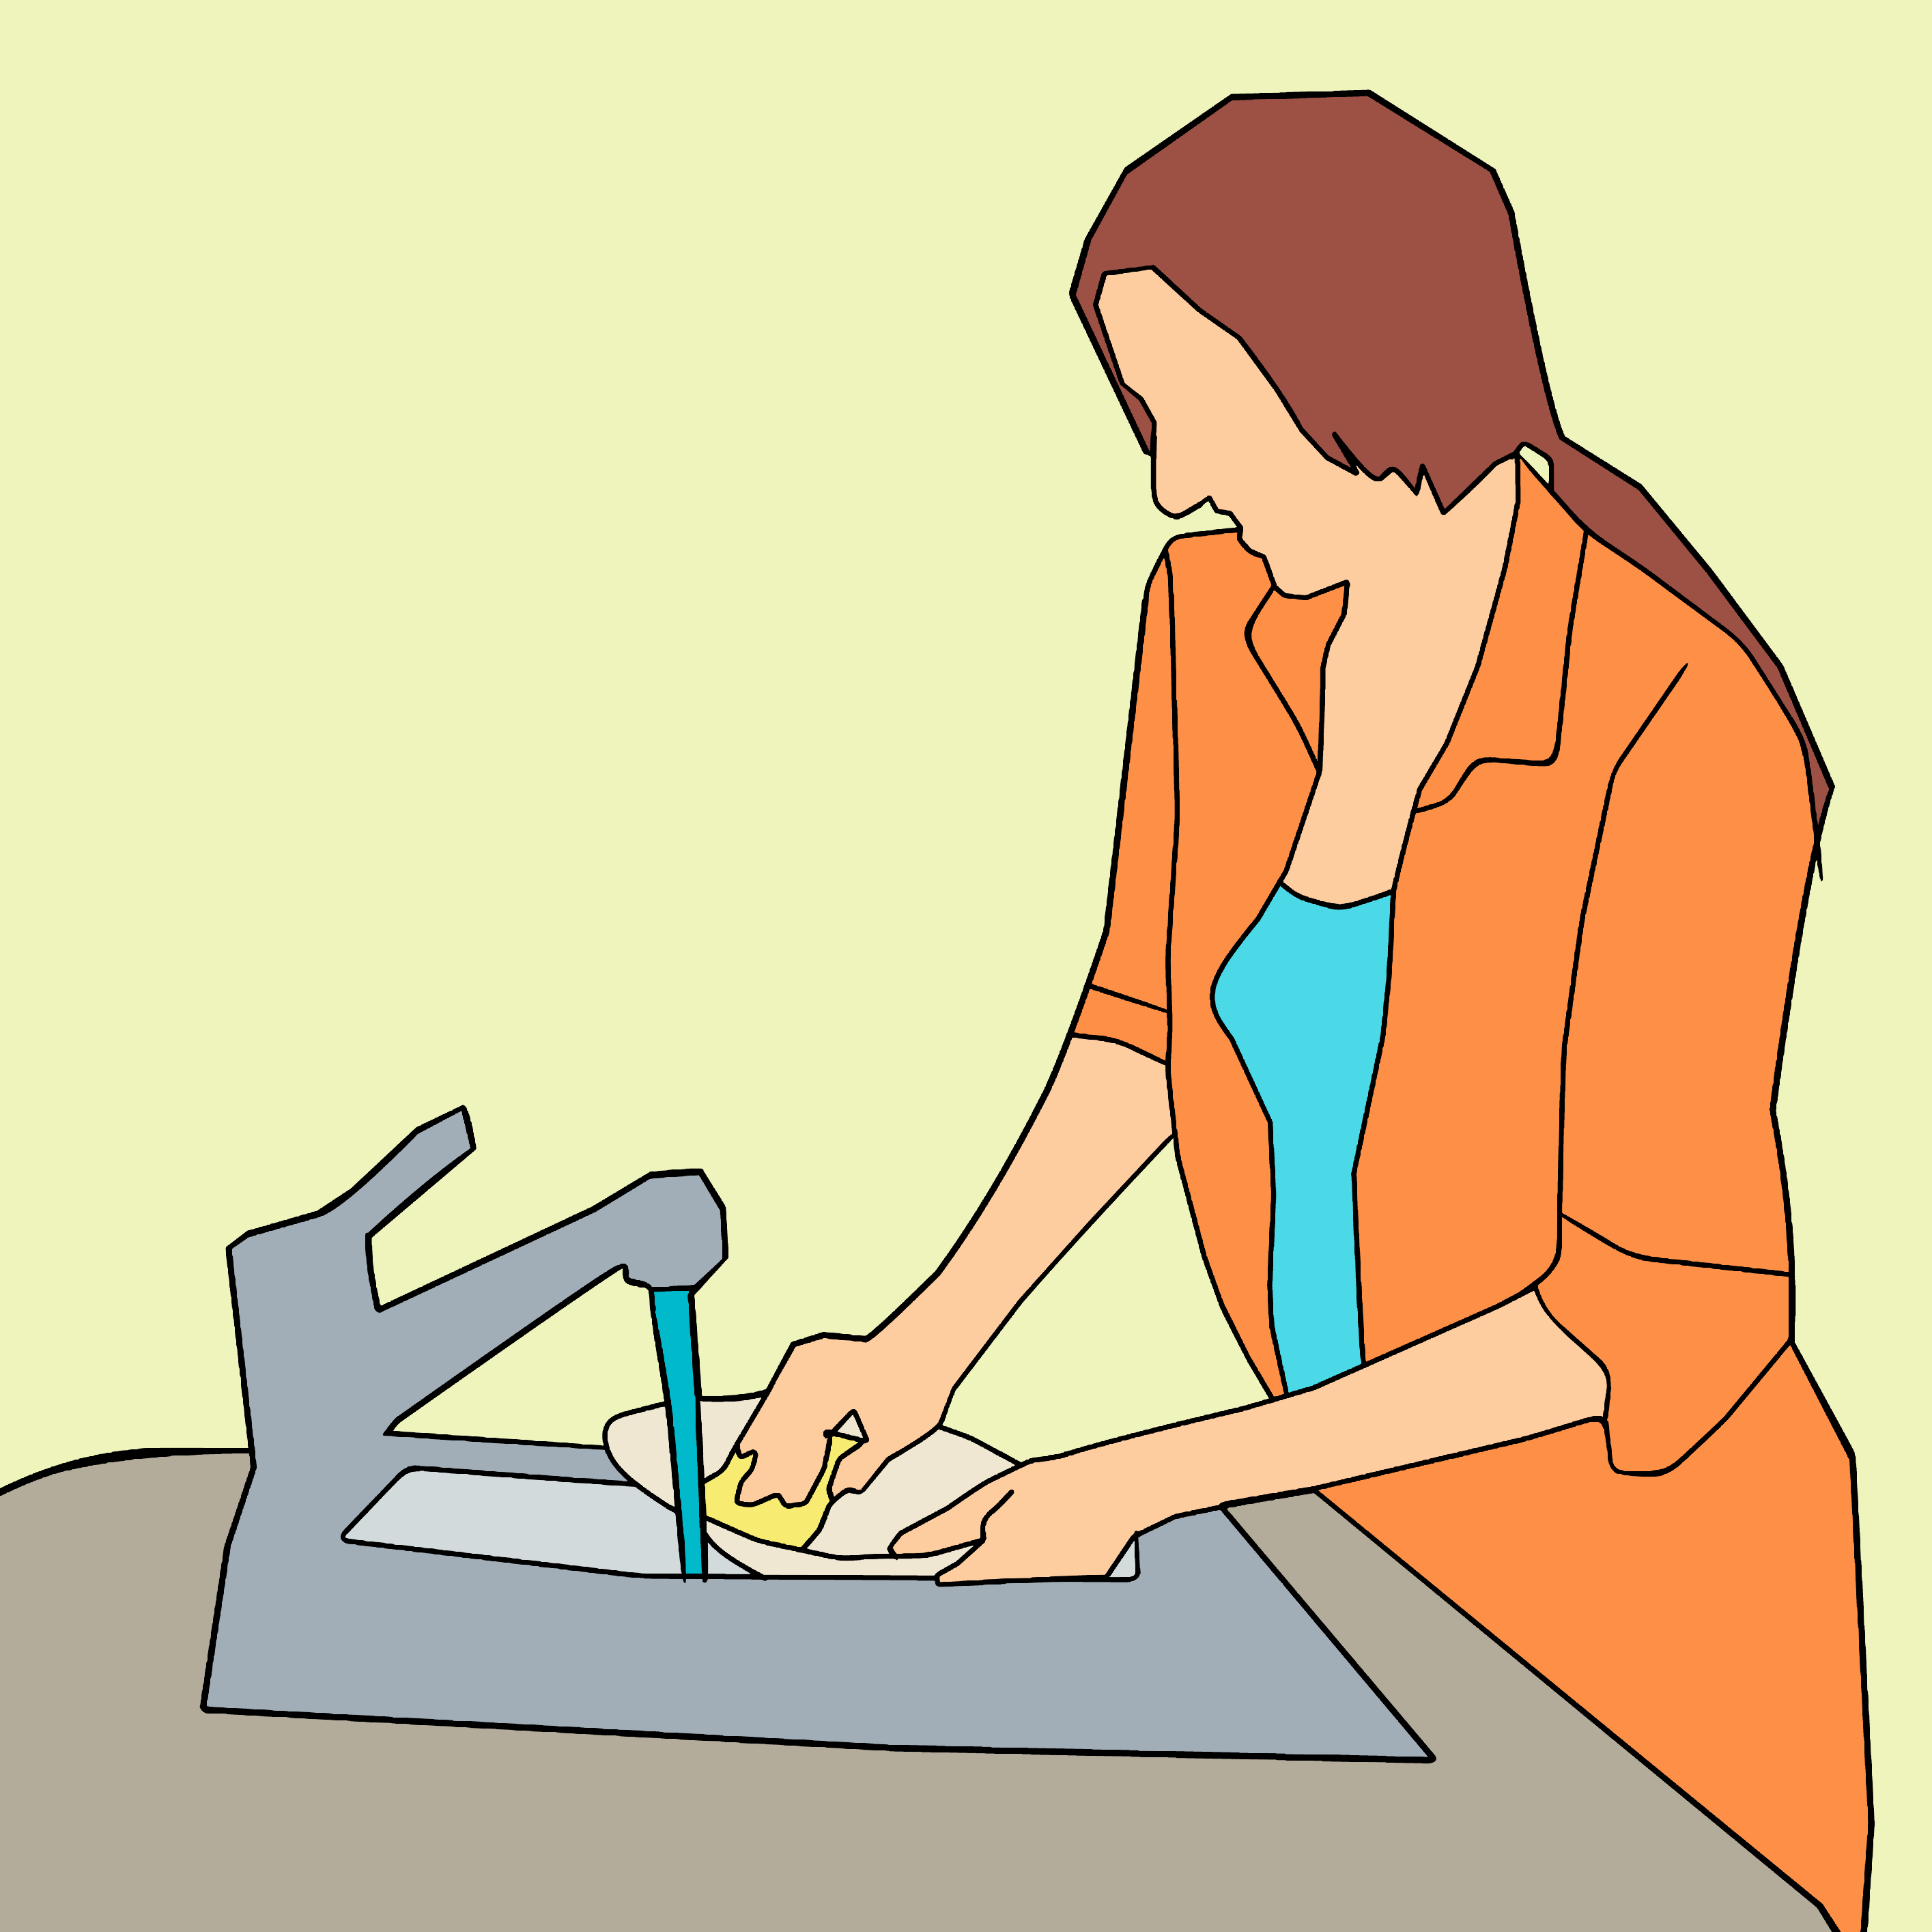 Woman washing dish drawing free image download